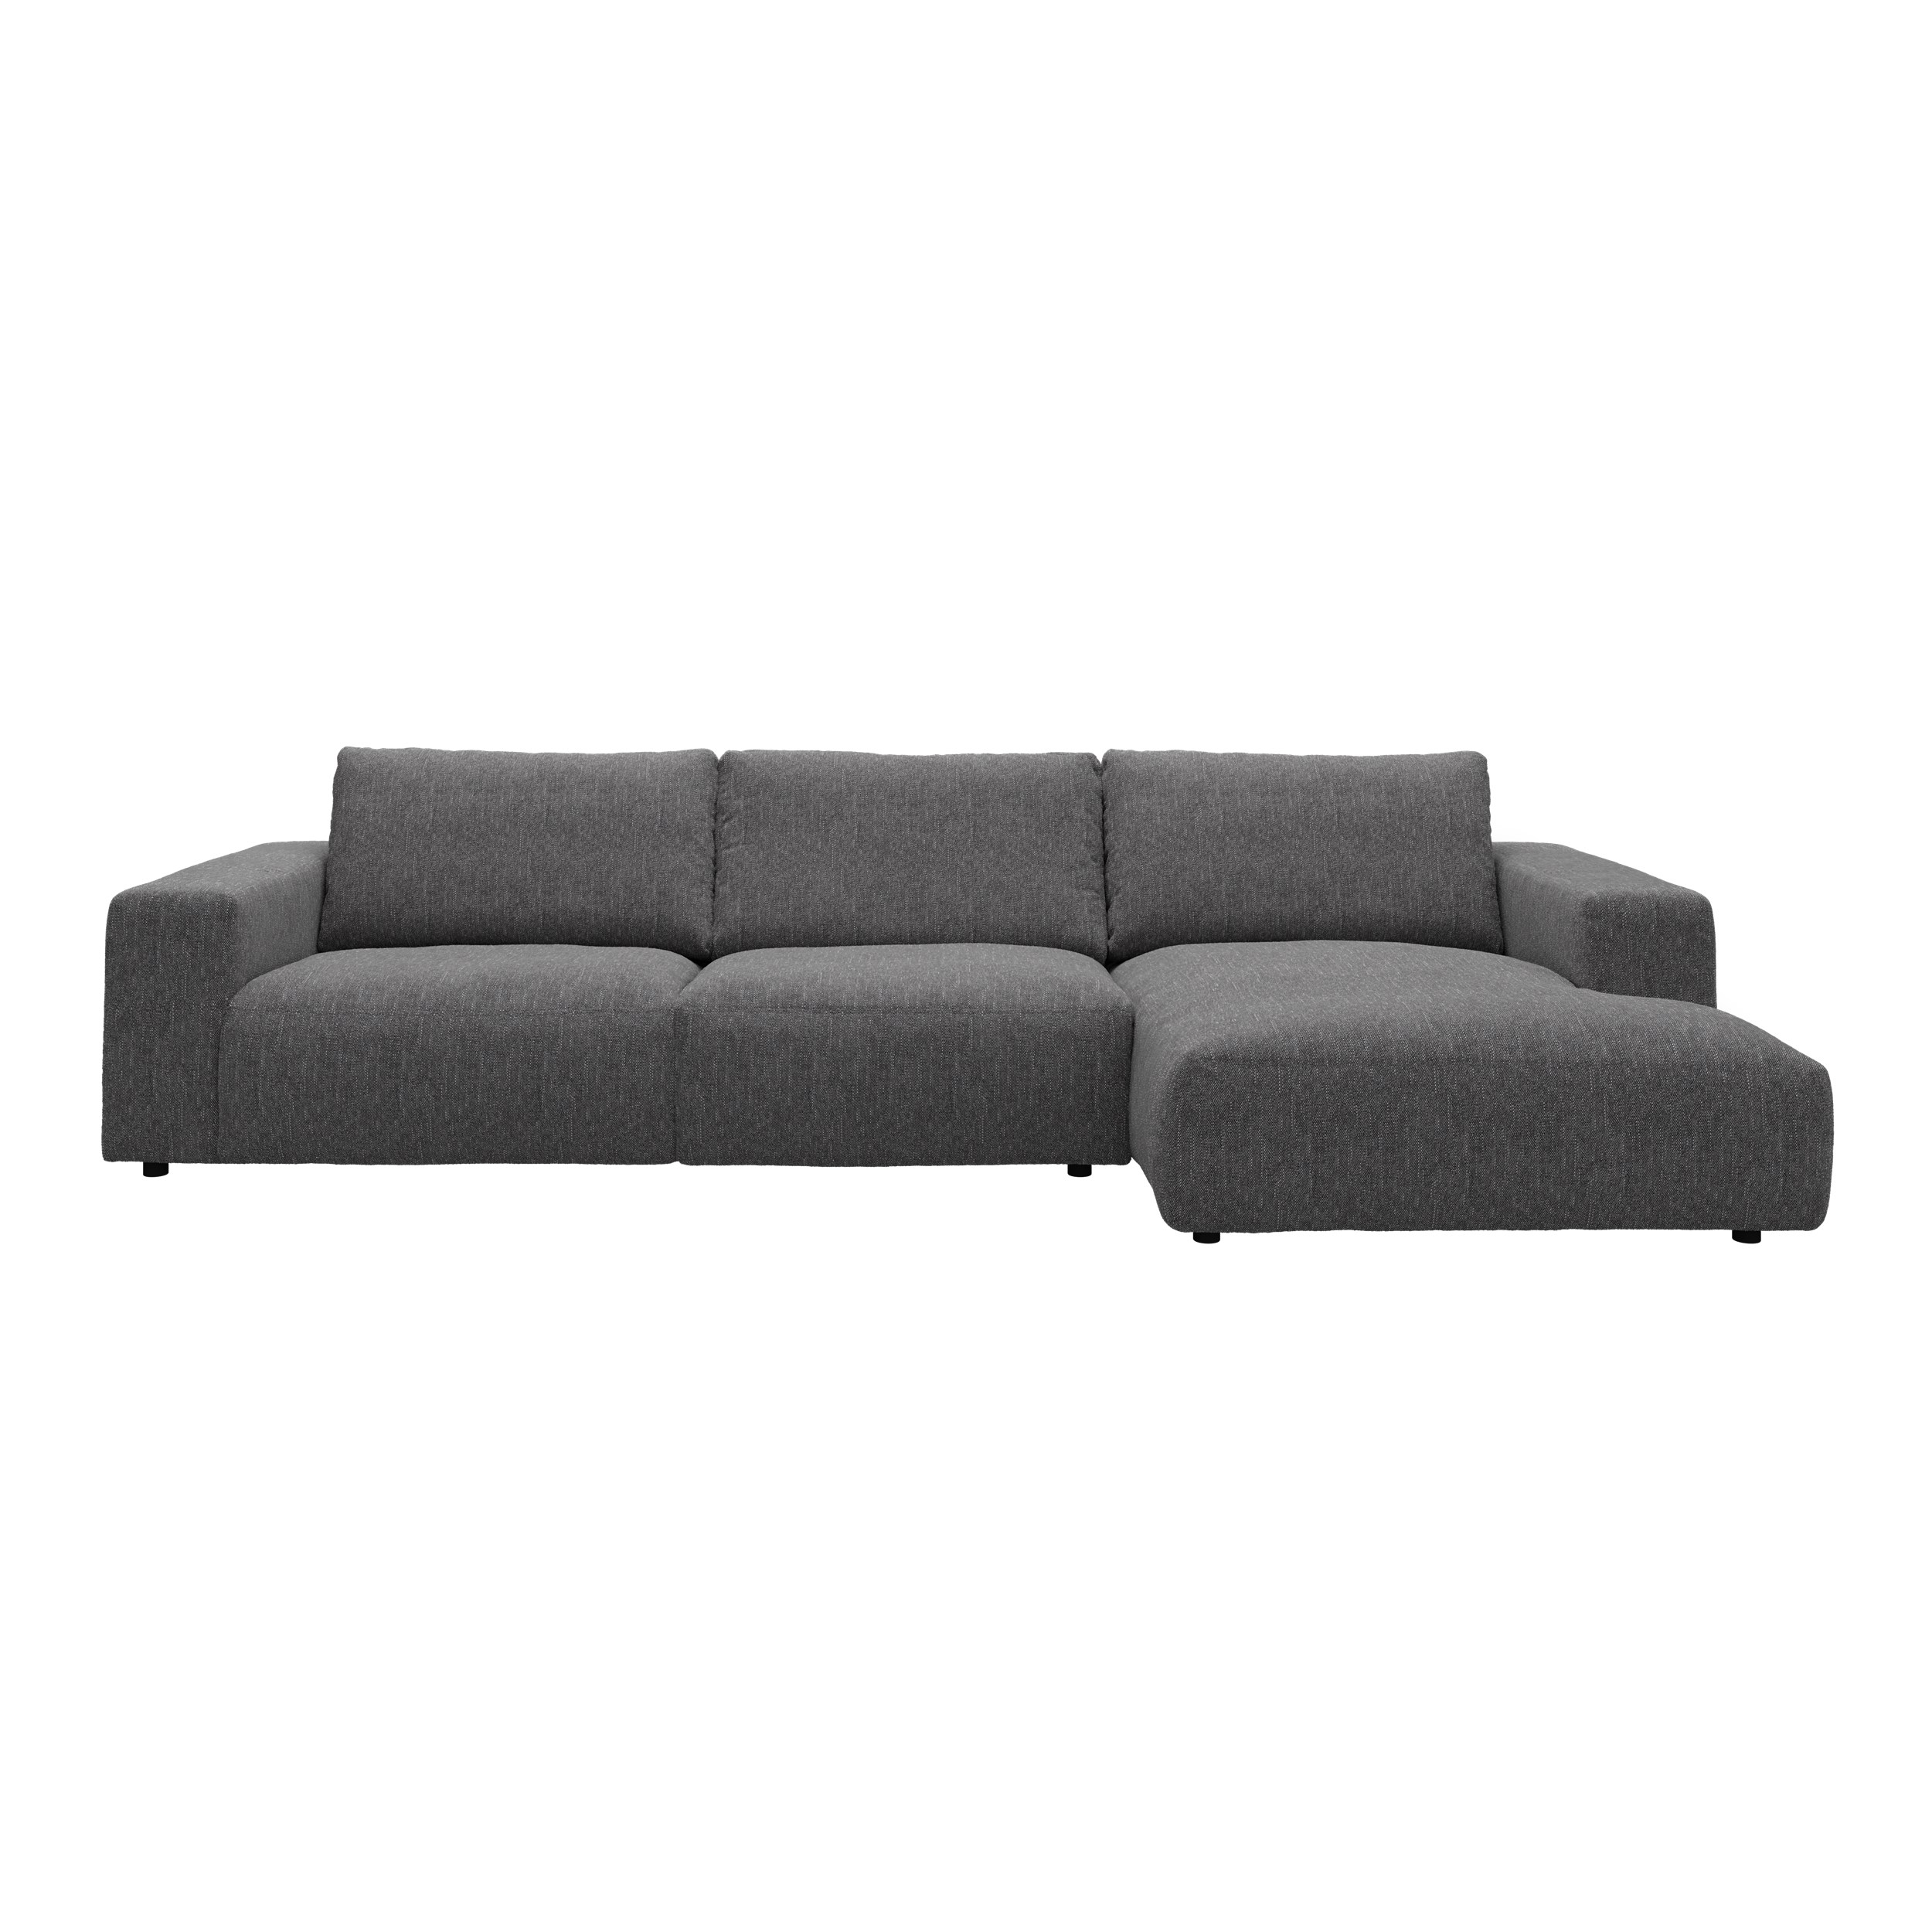 Harlow højrevendt sofa med chaiselong